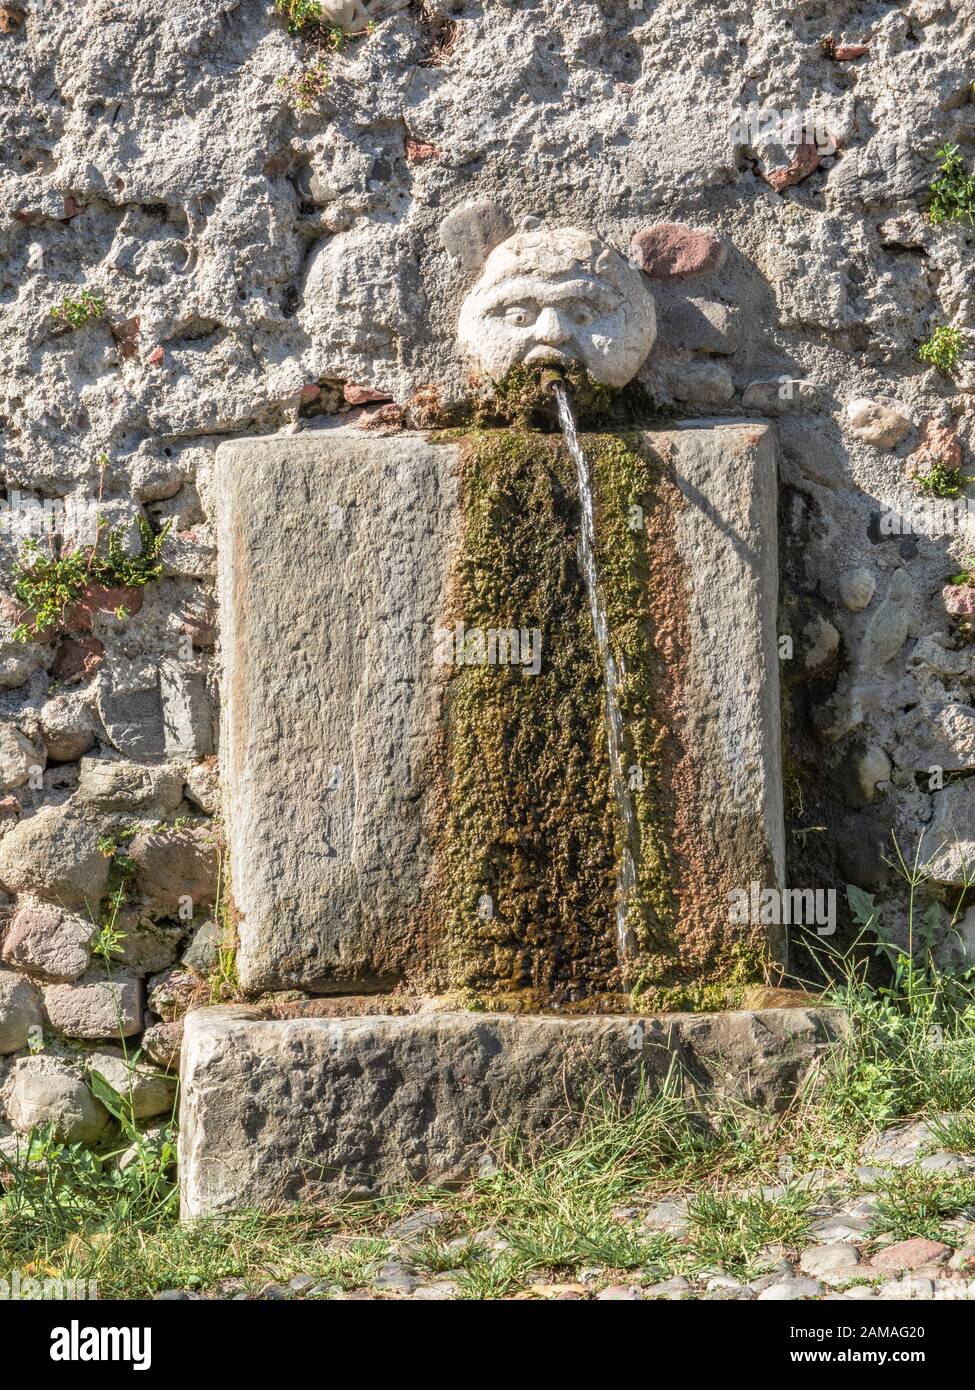 Jahrhundert alter Steinbrunnen mit Wasser, das aus dem Mund eines menschlichen Gesichts fließt Stockfoto